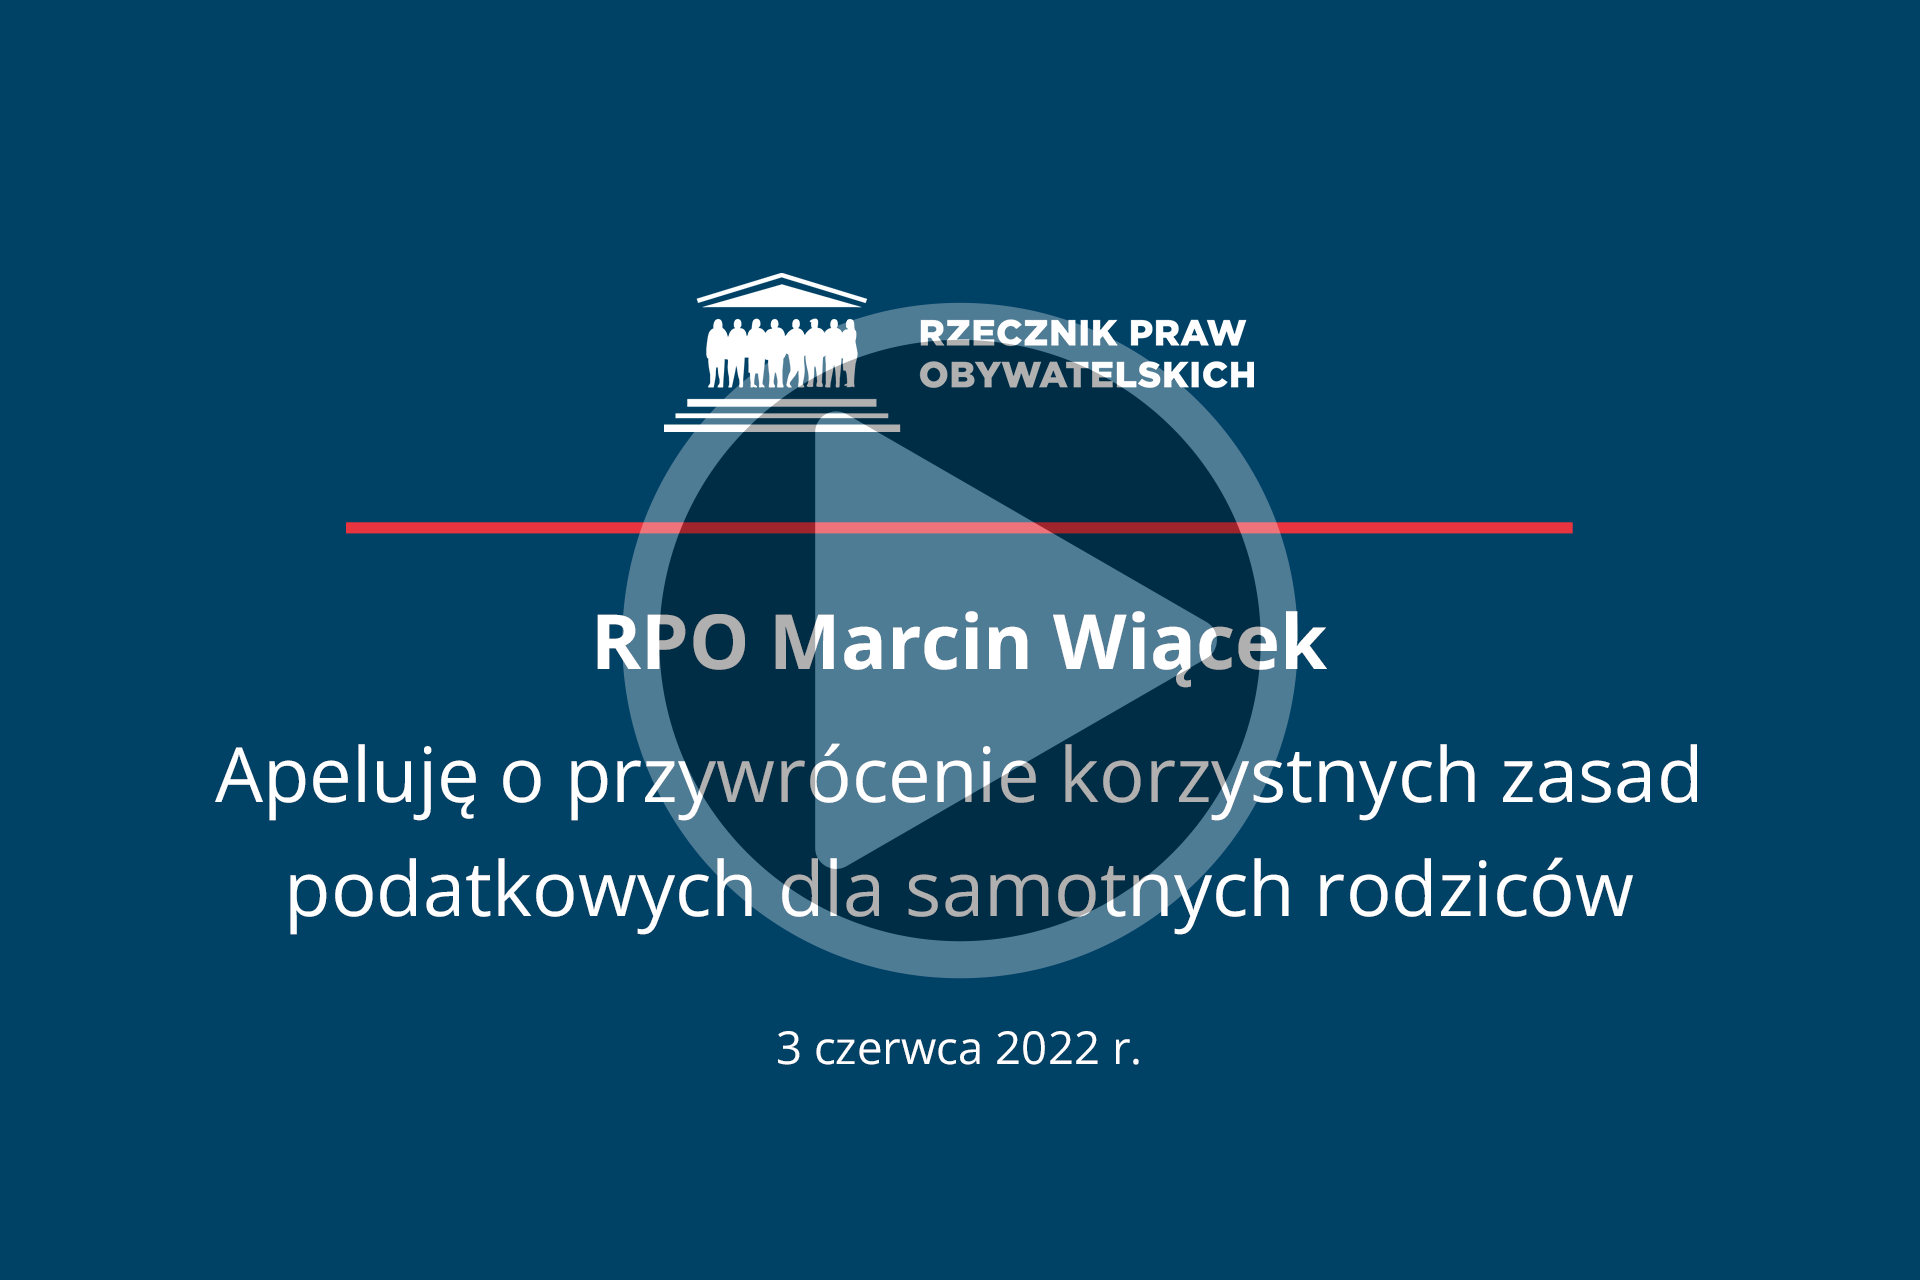 Plansza z napisem RPO Marcin Wiącek - Apeluję o przywrócenie korzystnych zasad podatkowych dla samotnych rodziców - 3 czerwca 2022 r. i przyciskiem odtwarzania wideo